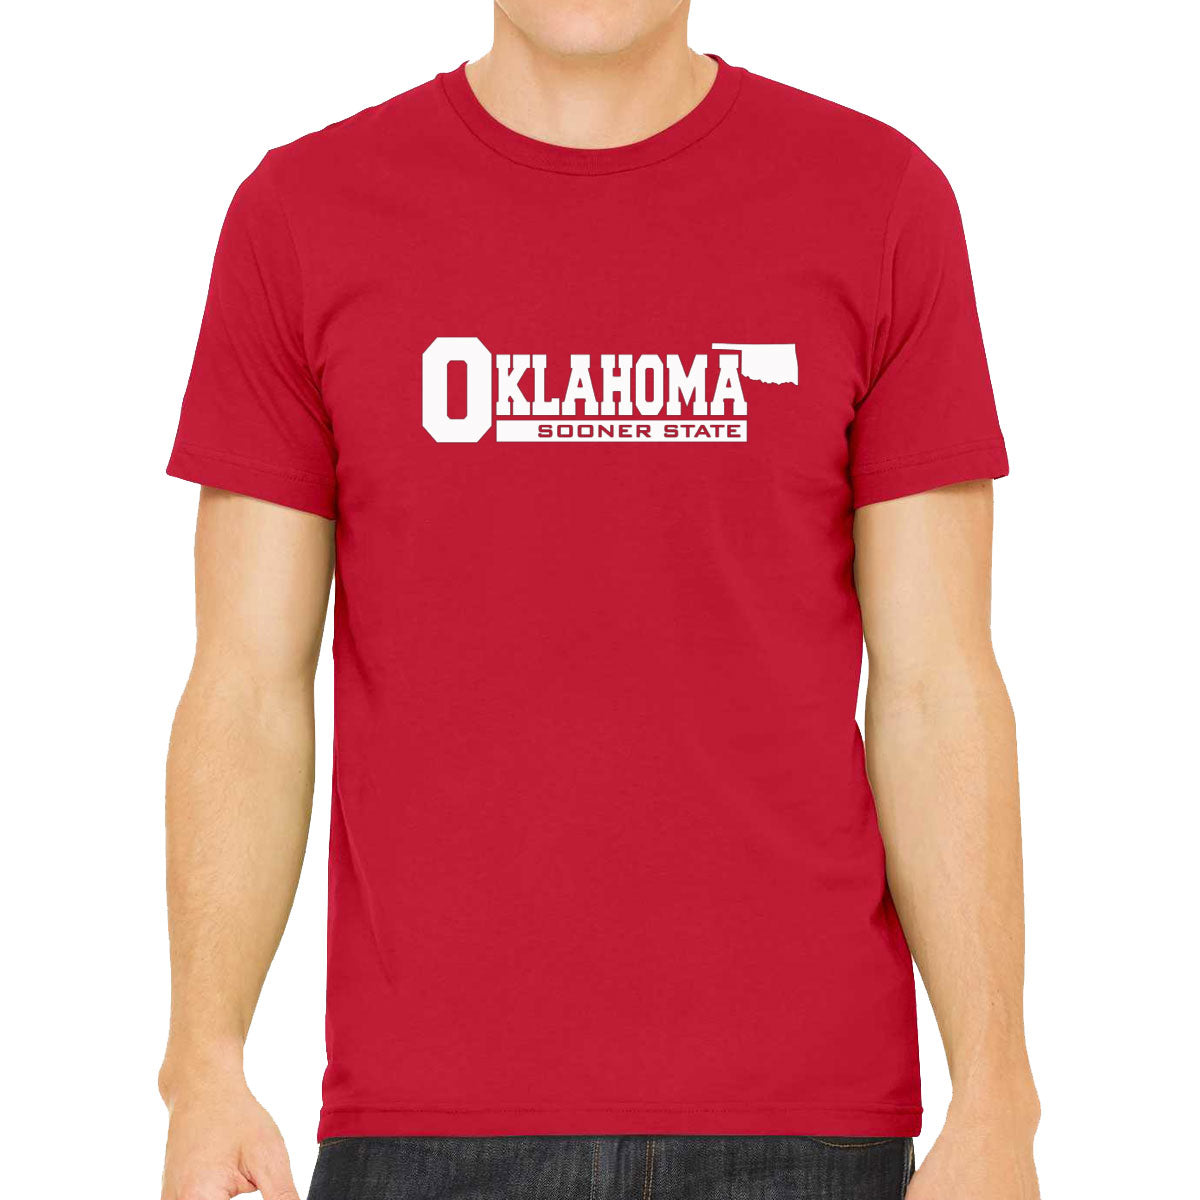 Oklahoma Sooner State Men's T-shirt